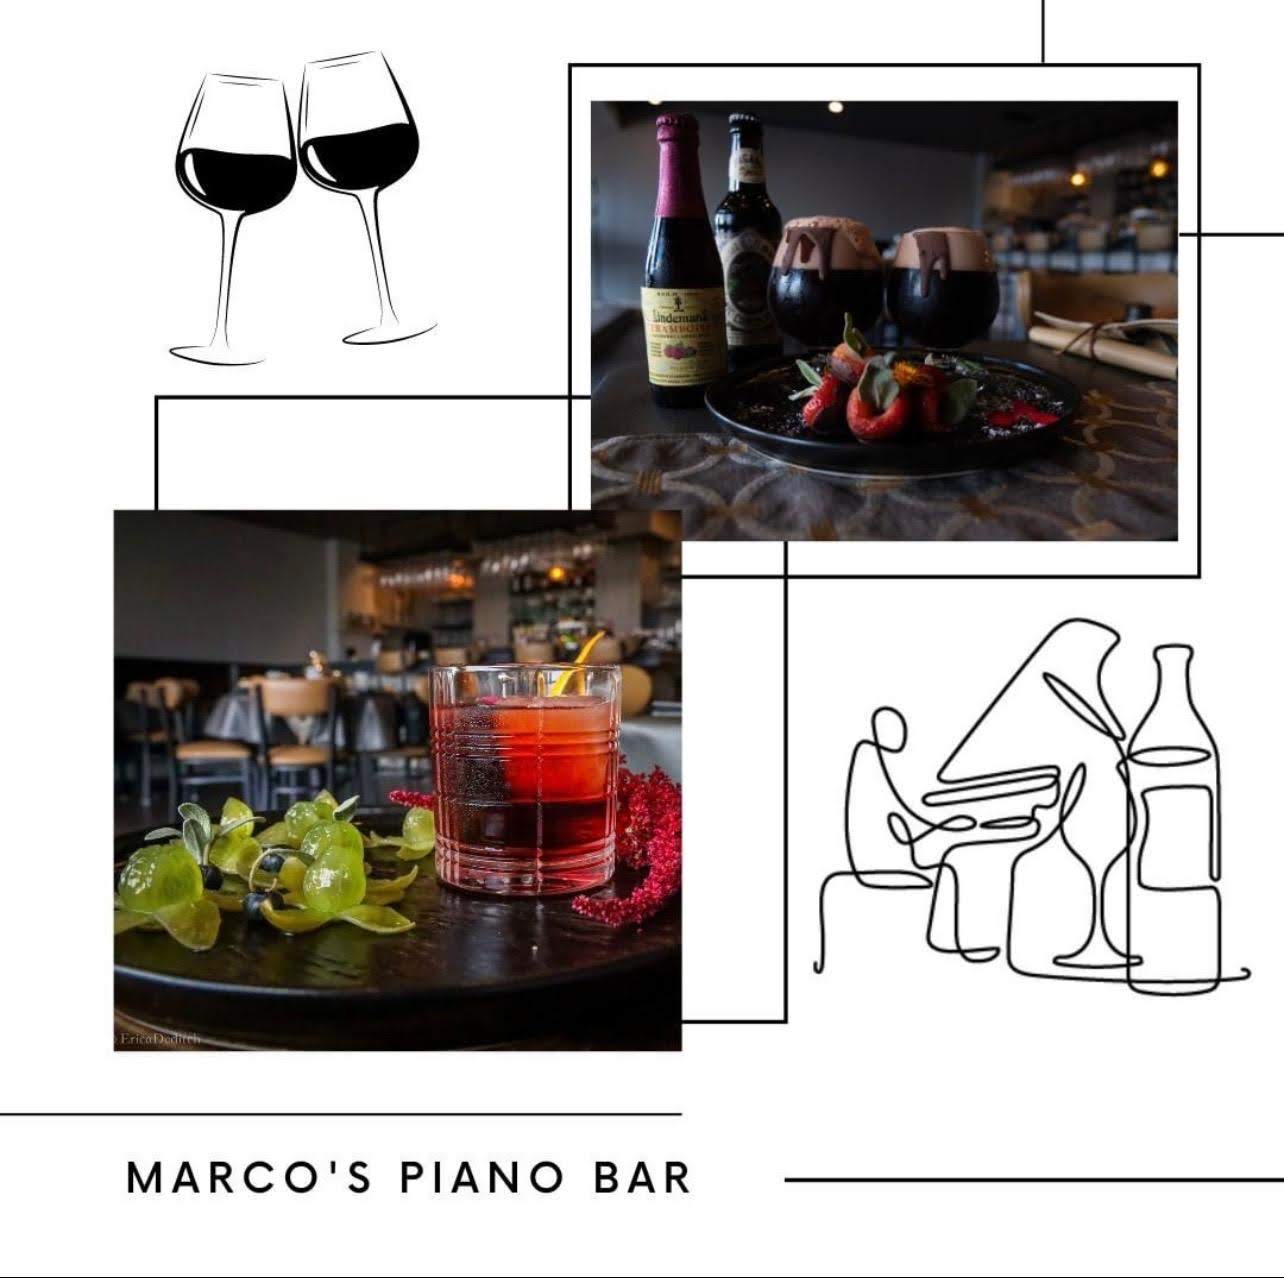 Marco's Piano Bar